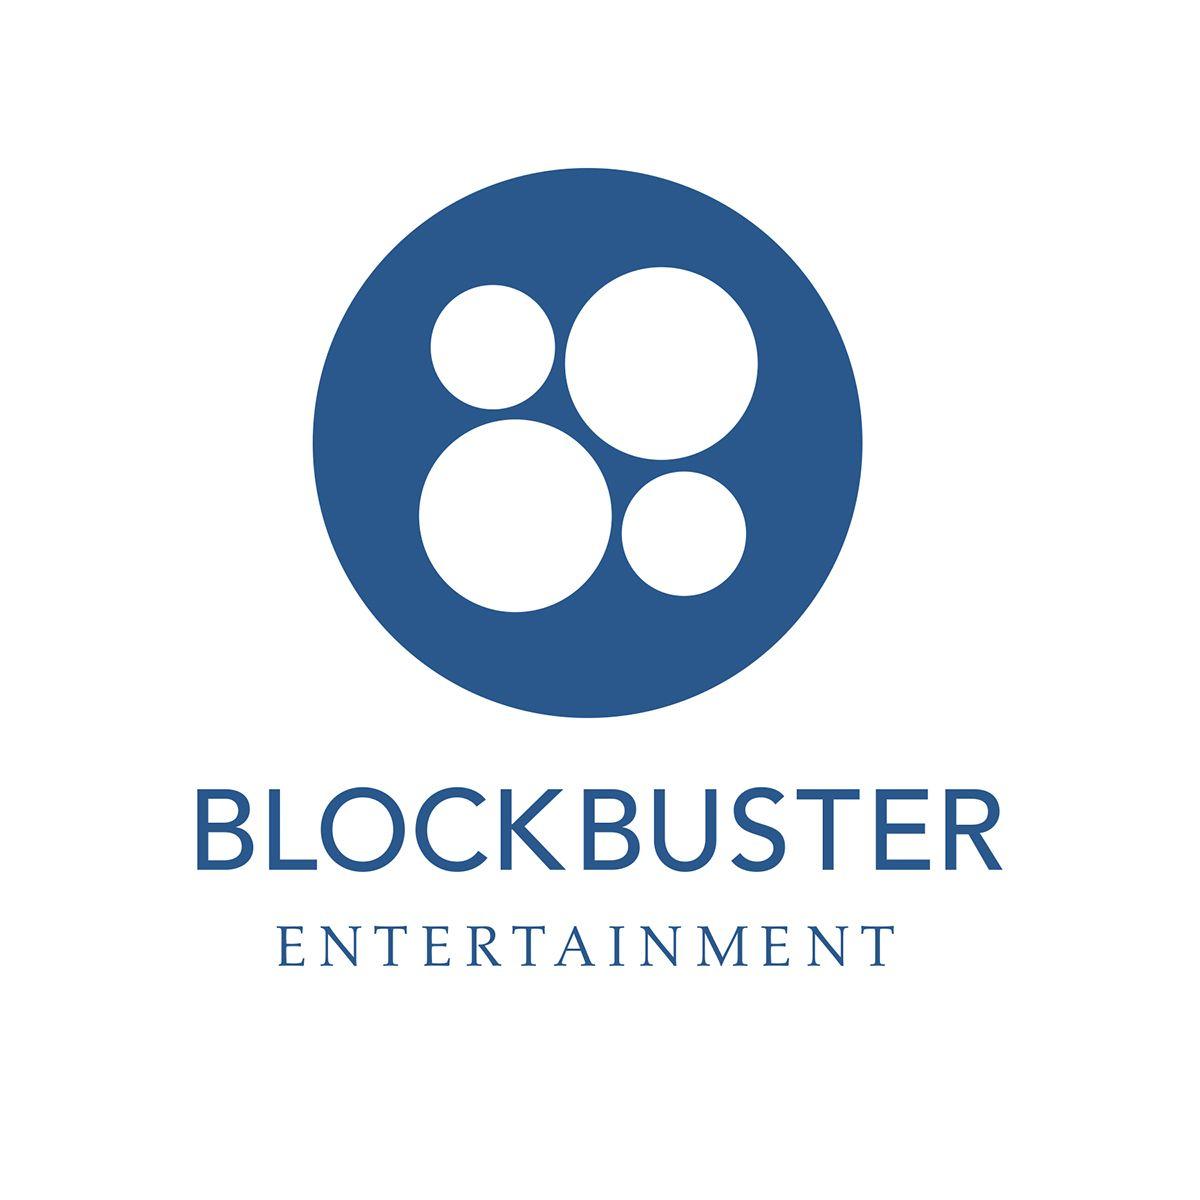 Blockbuster Entertainment Logo - Re Branding